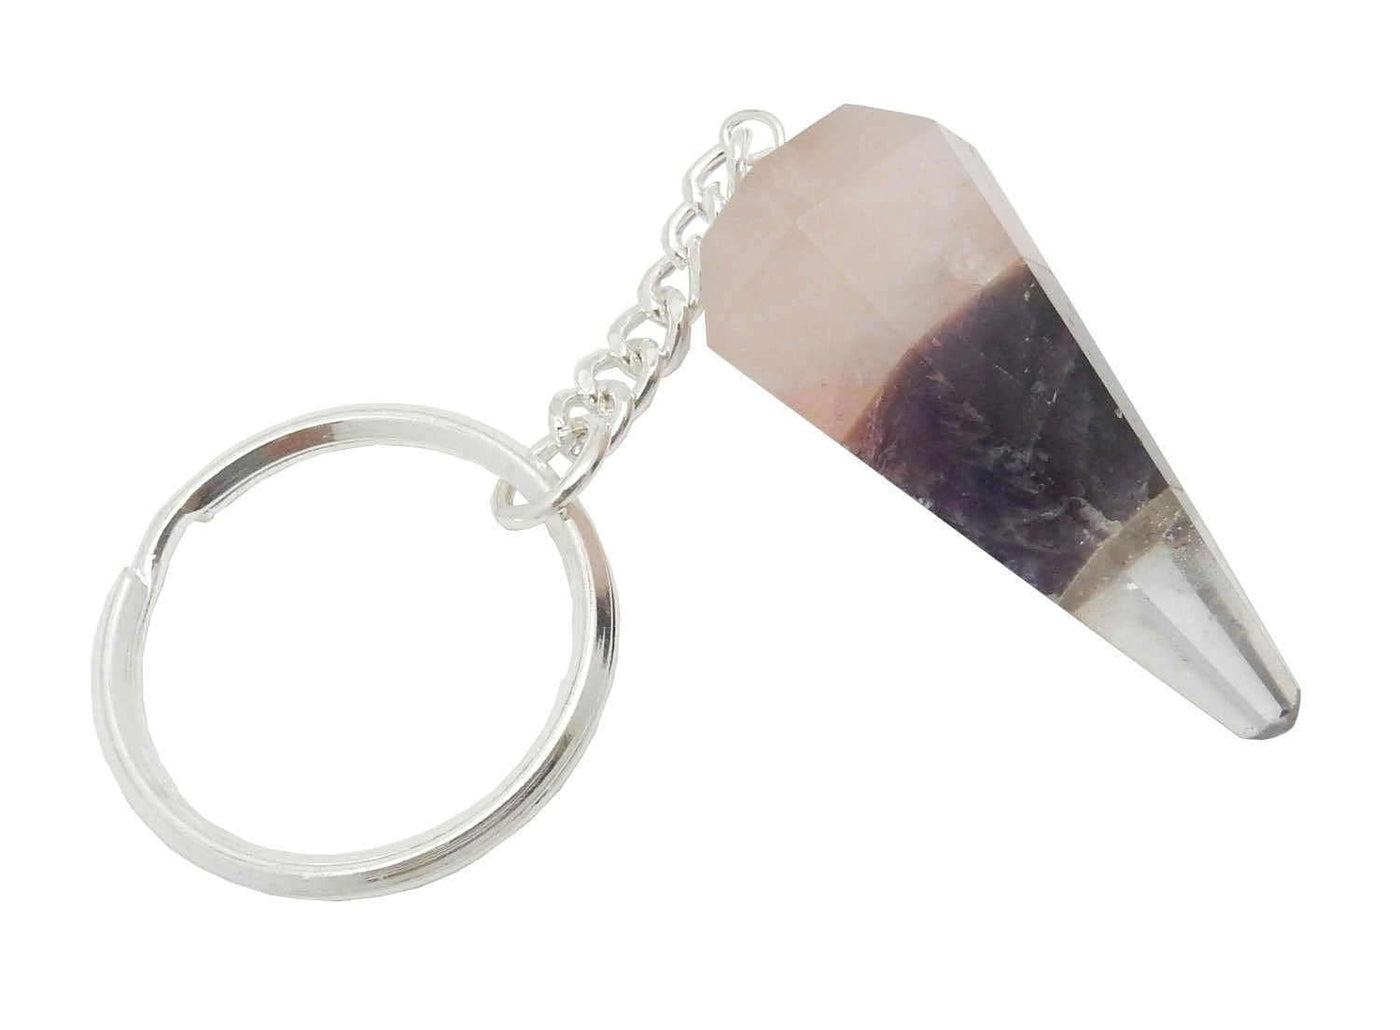 Key-Chains - Triple Stone Keychain- Amethyst Rose Quartz Crystal Quartz Keychain - one close up